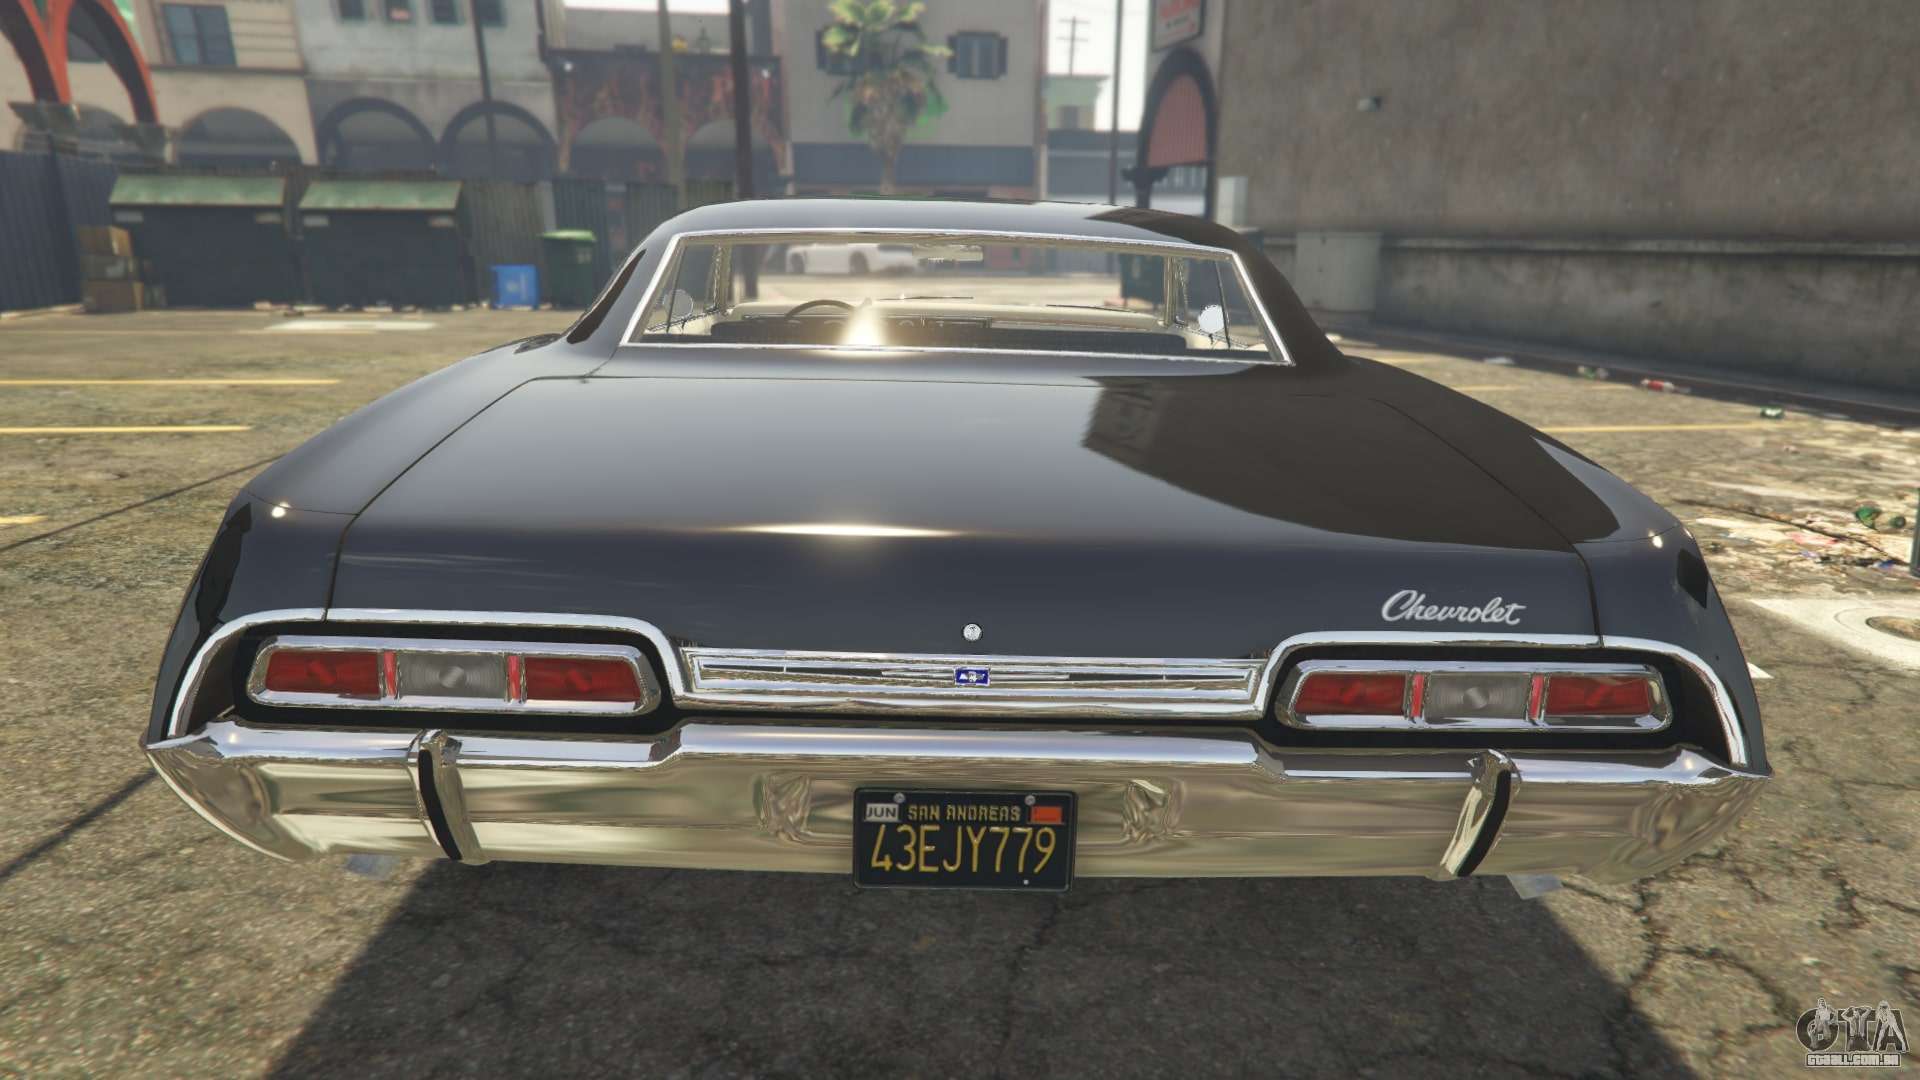 Chevy impala gta 5 фото 92